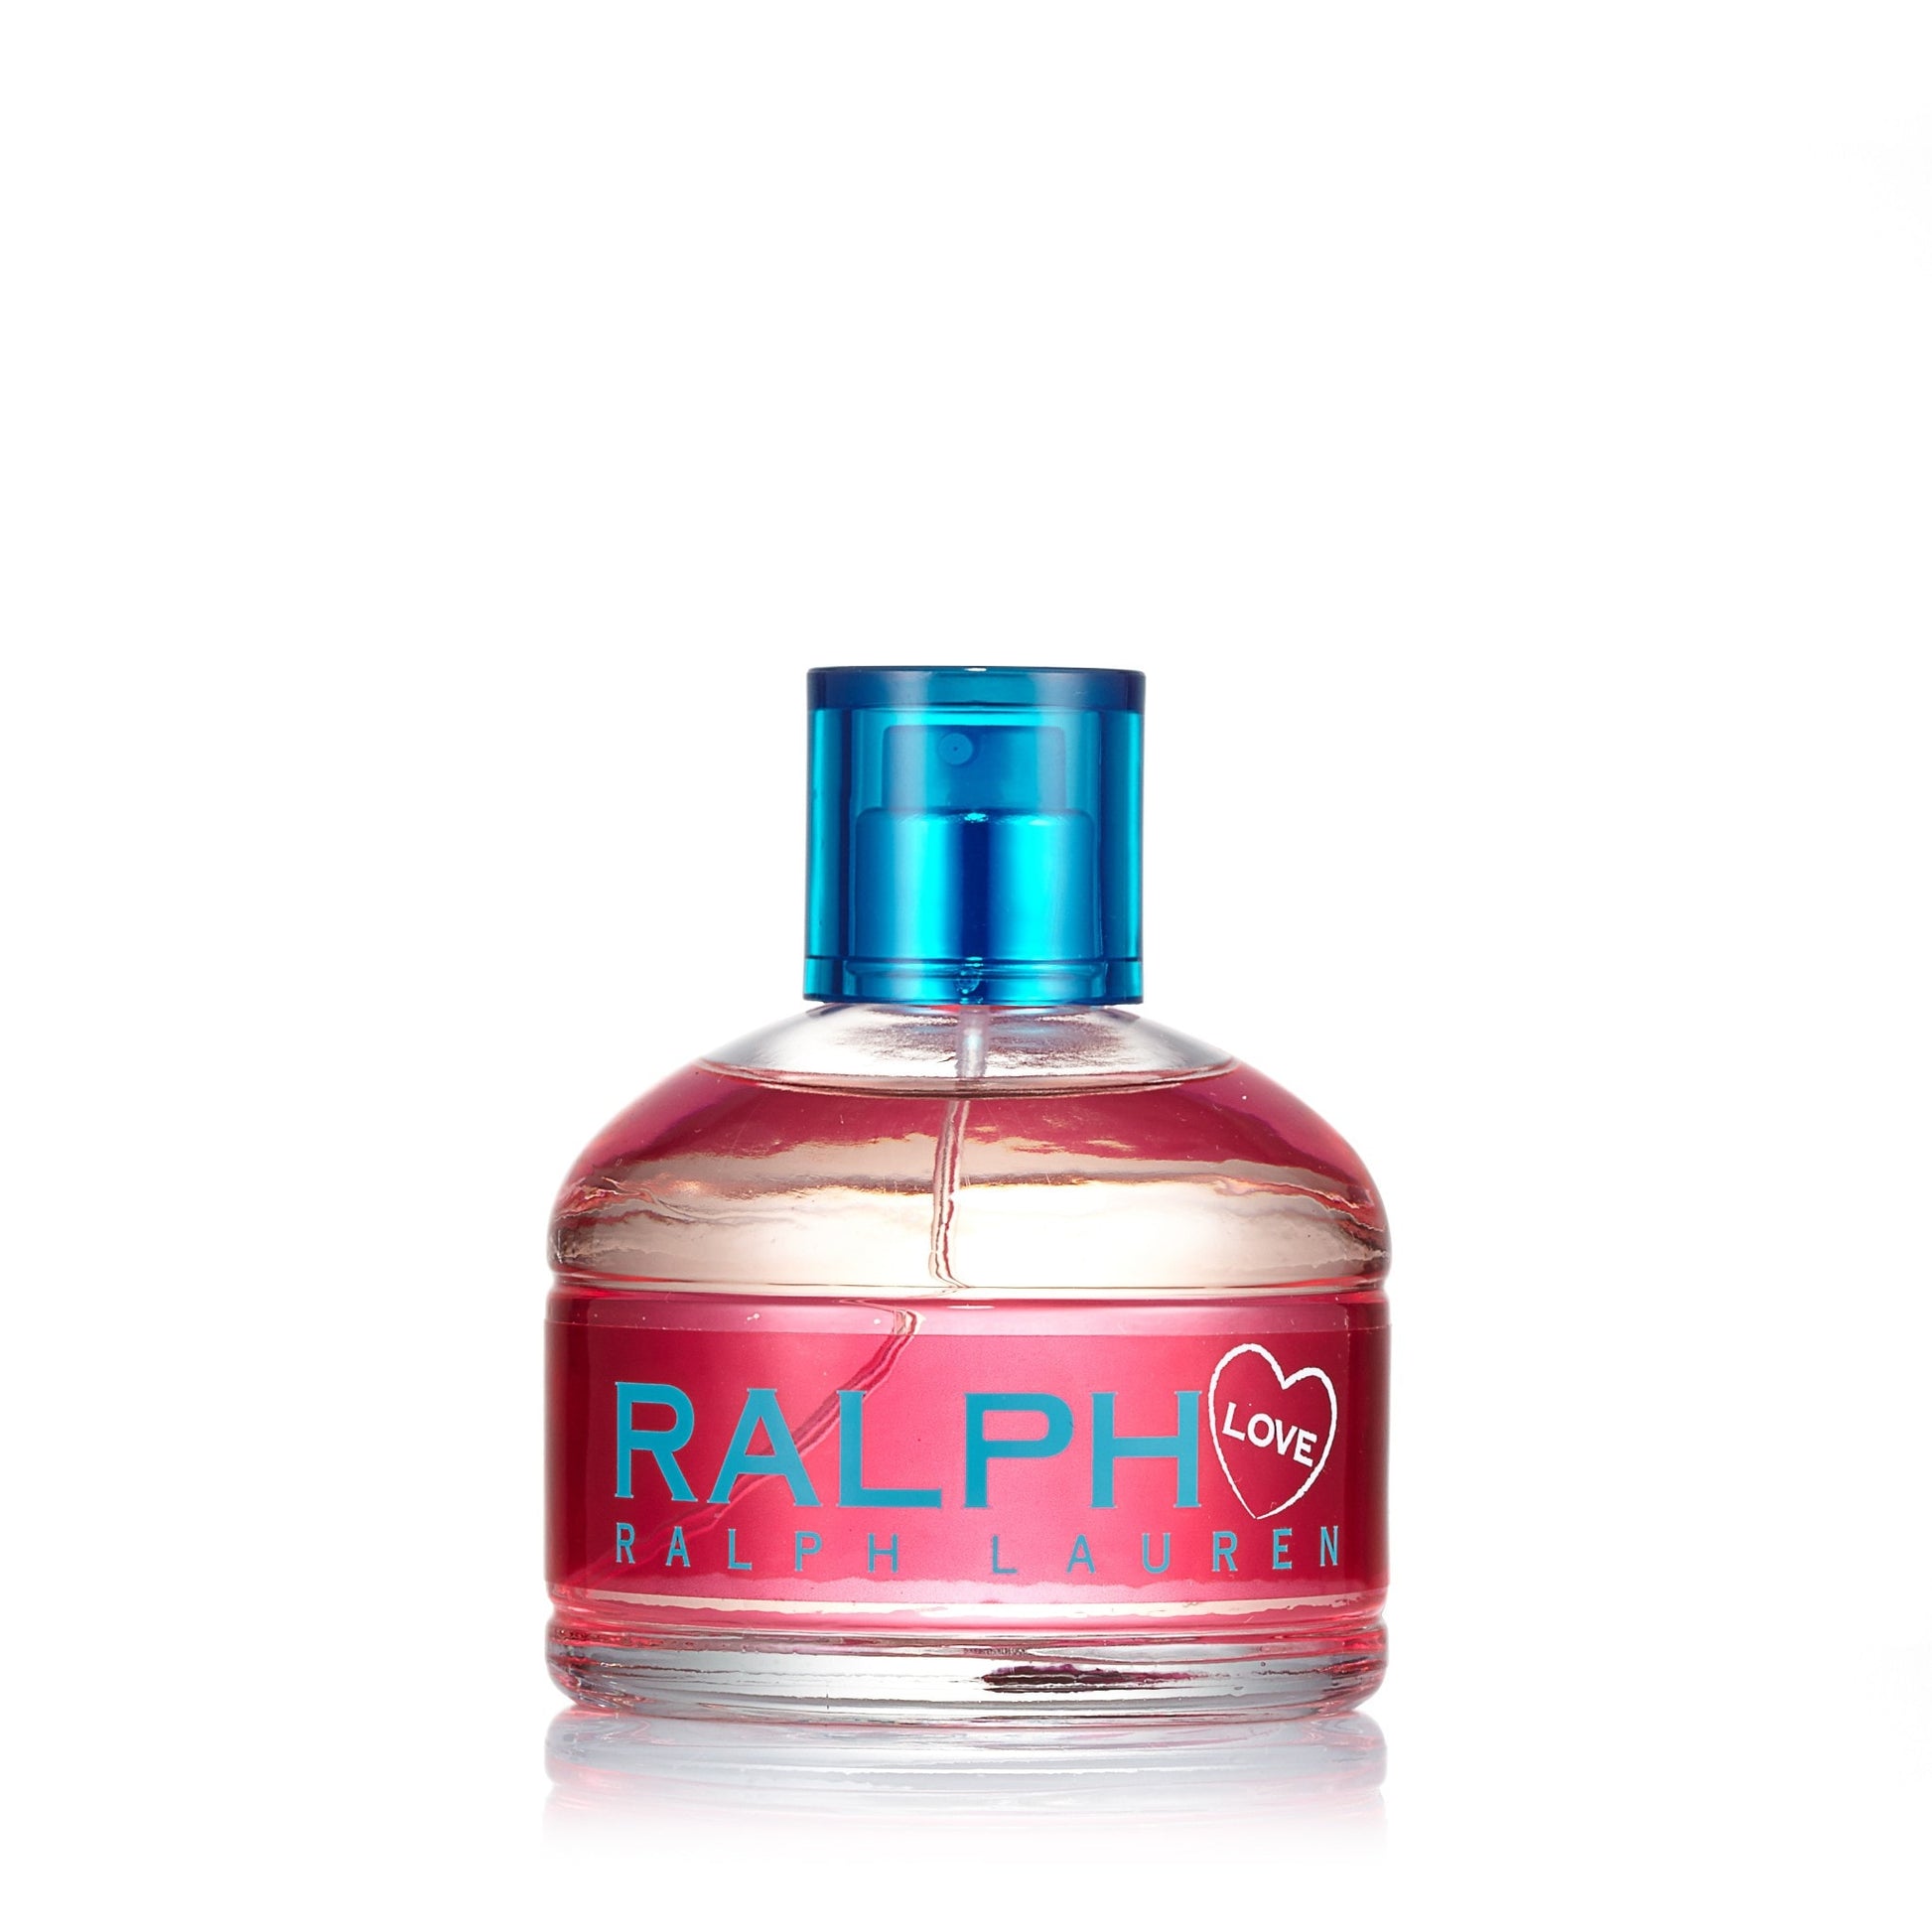 Ralph Love Eau de Toilette Spray for Women by Ralph Lauren, Product image 1